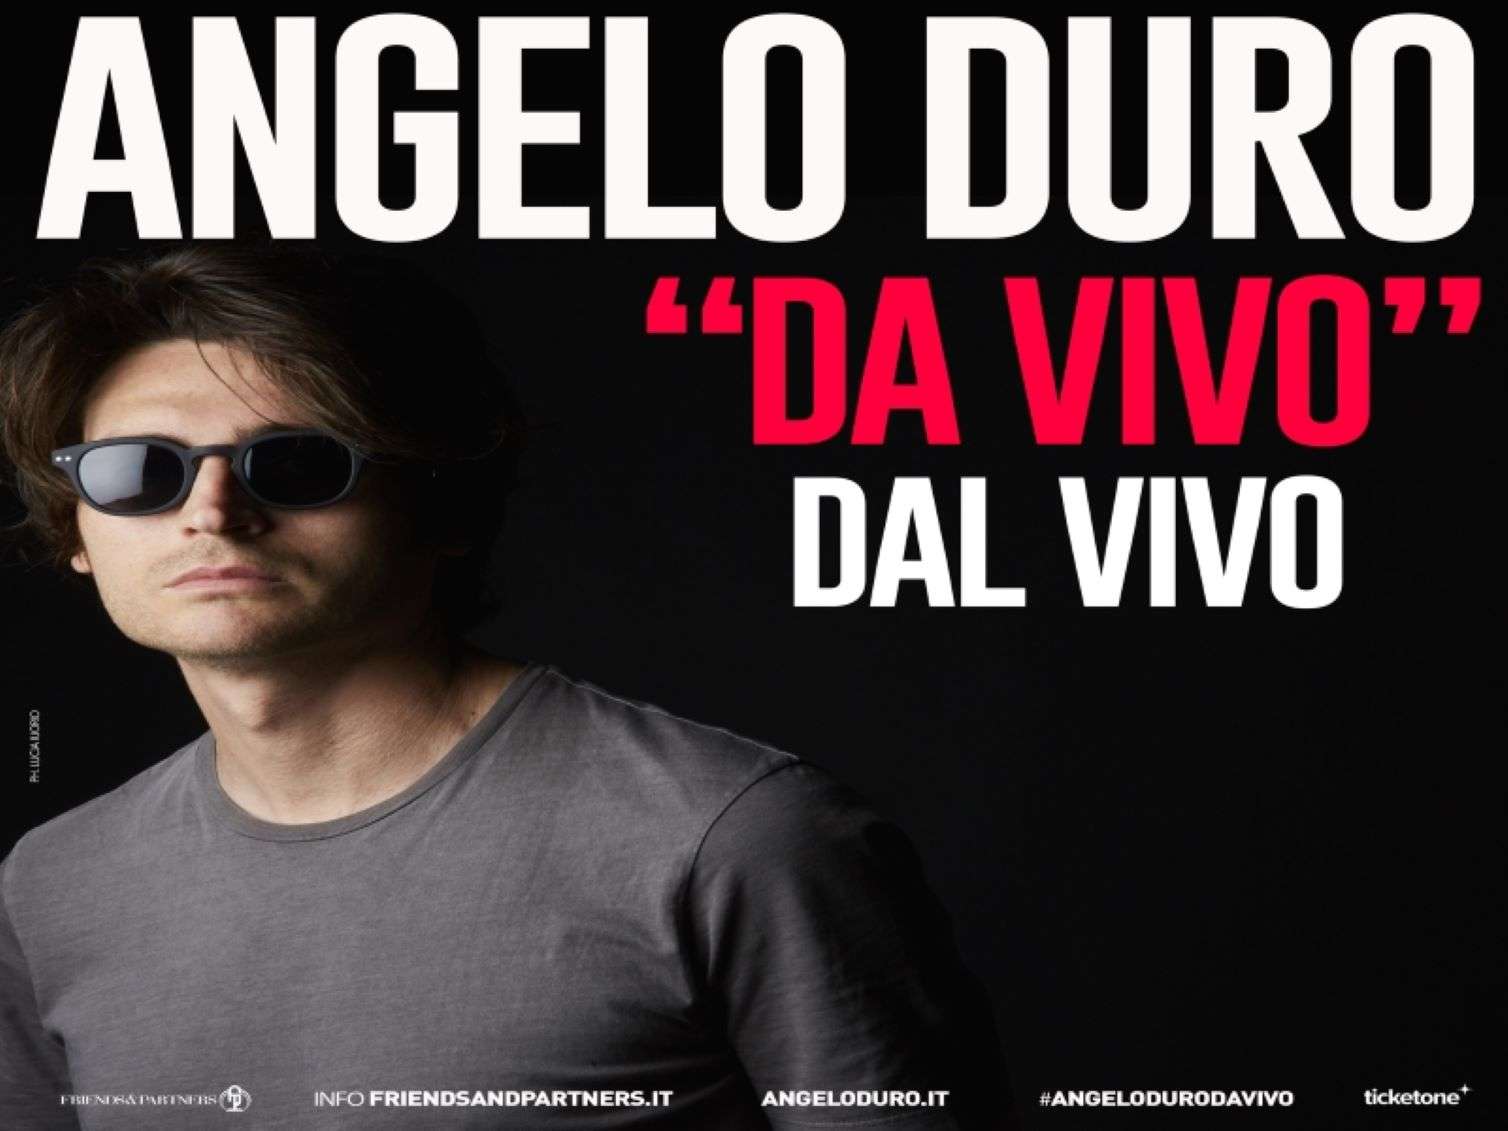 Angelo Duro torna “Da vivo, dal vivo” con tutta la sua comicità